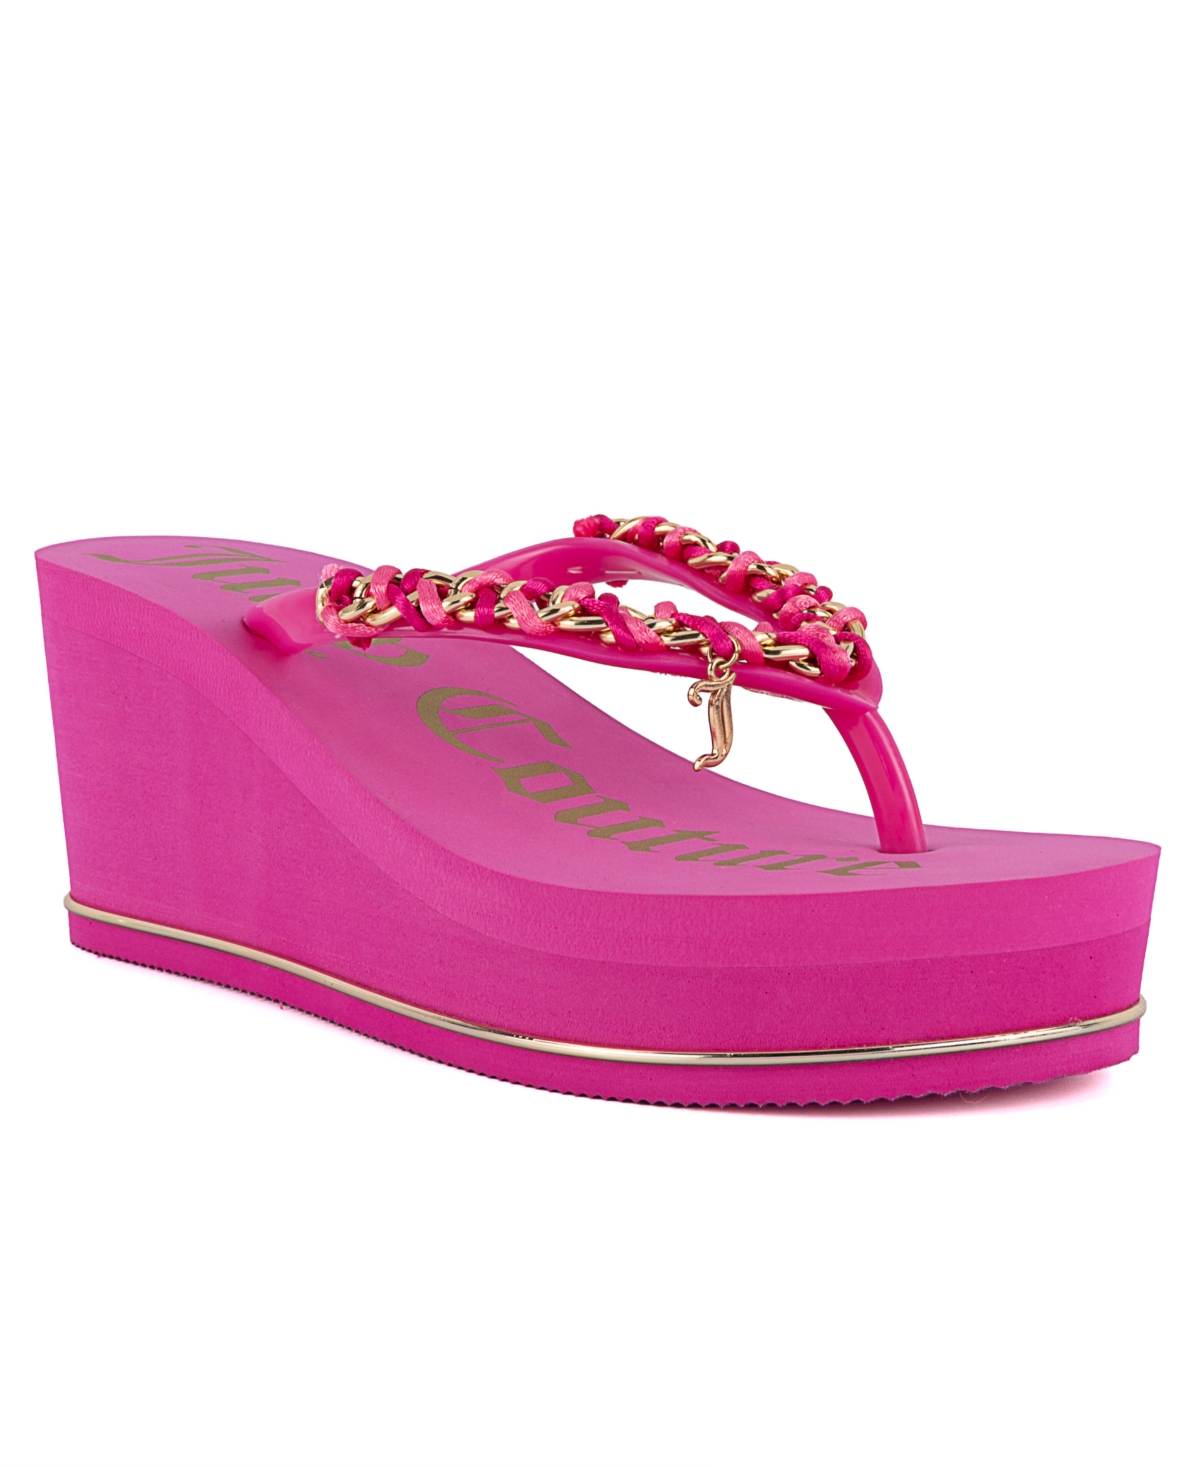 Women's Ullie Chain Detail Thong Platform Wedge Sandals - Bright Pink